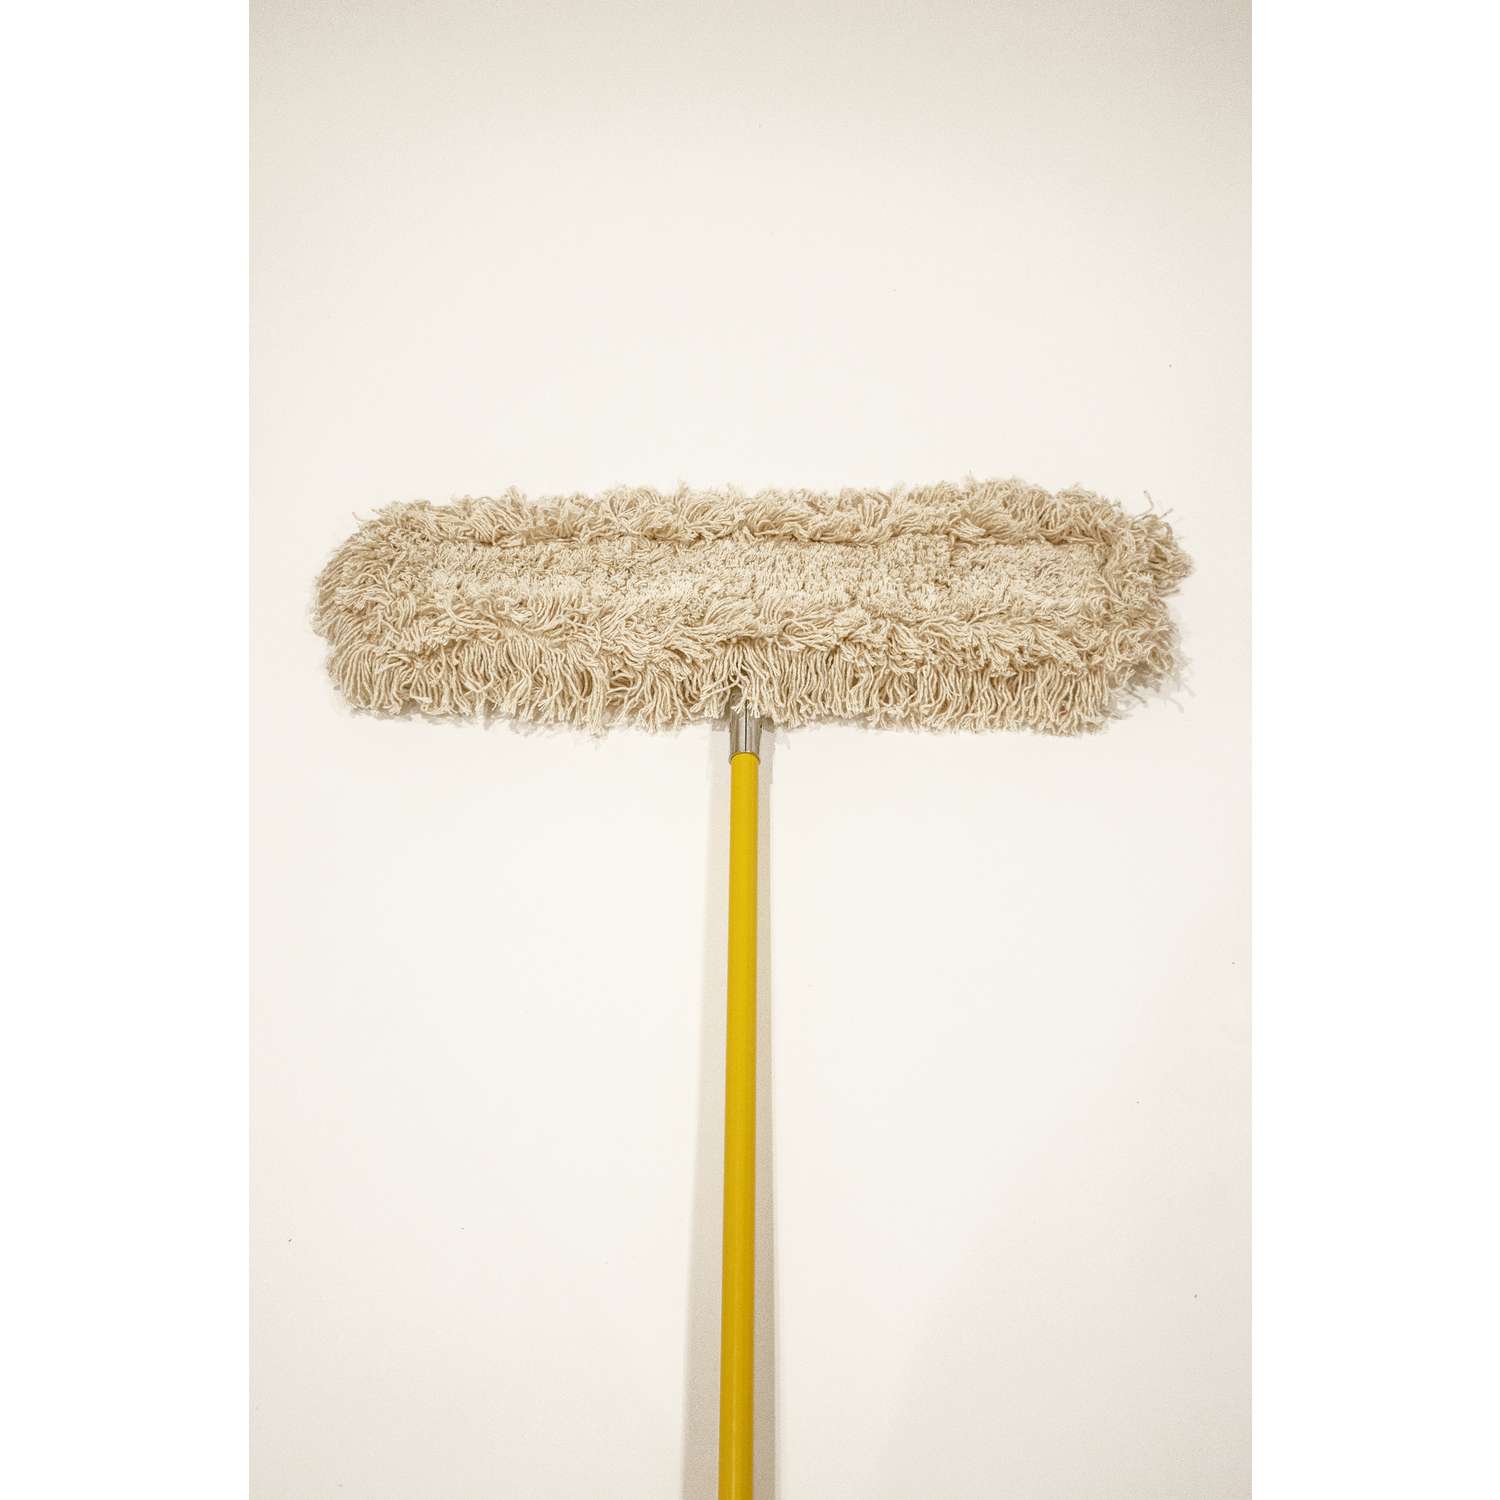 Commercial Cotton Dry Dust Mop Head Hardwood Floor Duster Broom Set |  Handle 24/36/48 x 5 inch